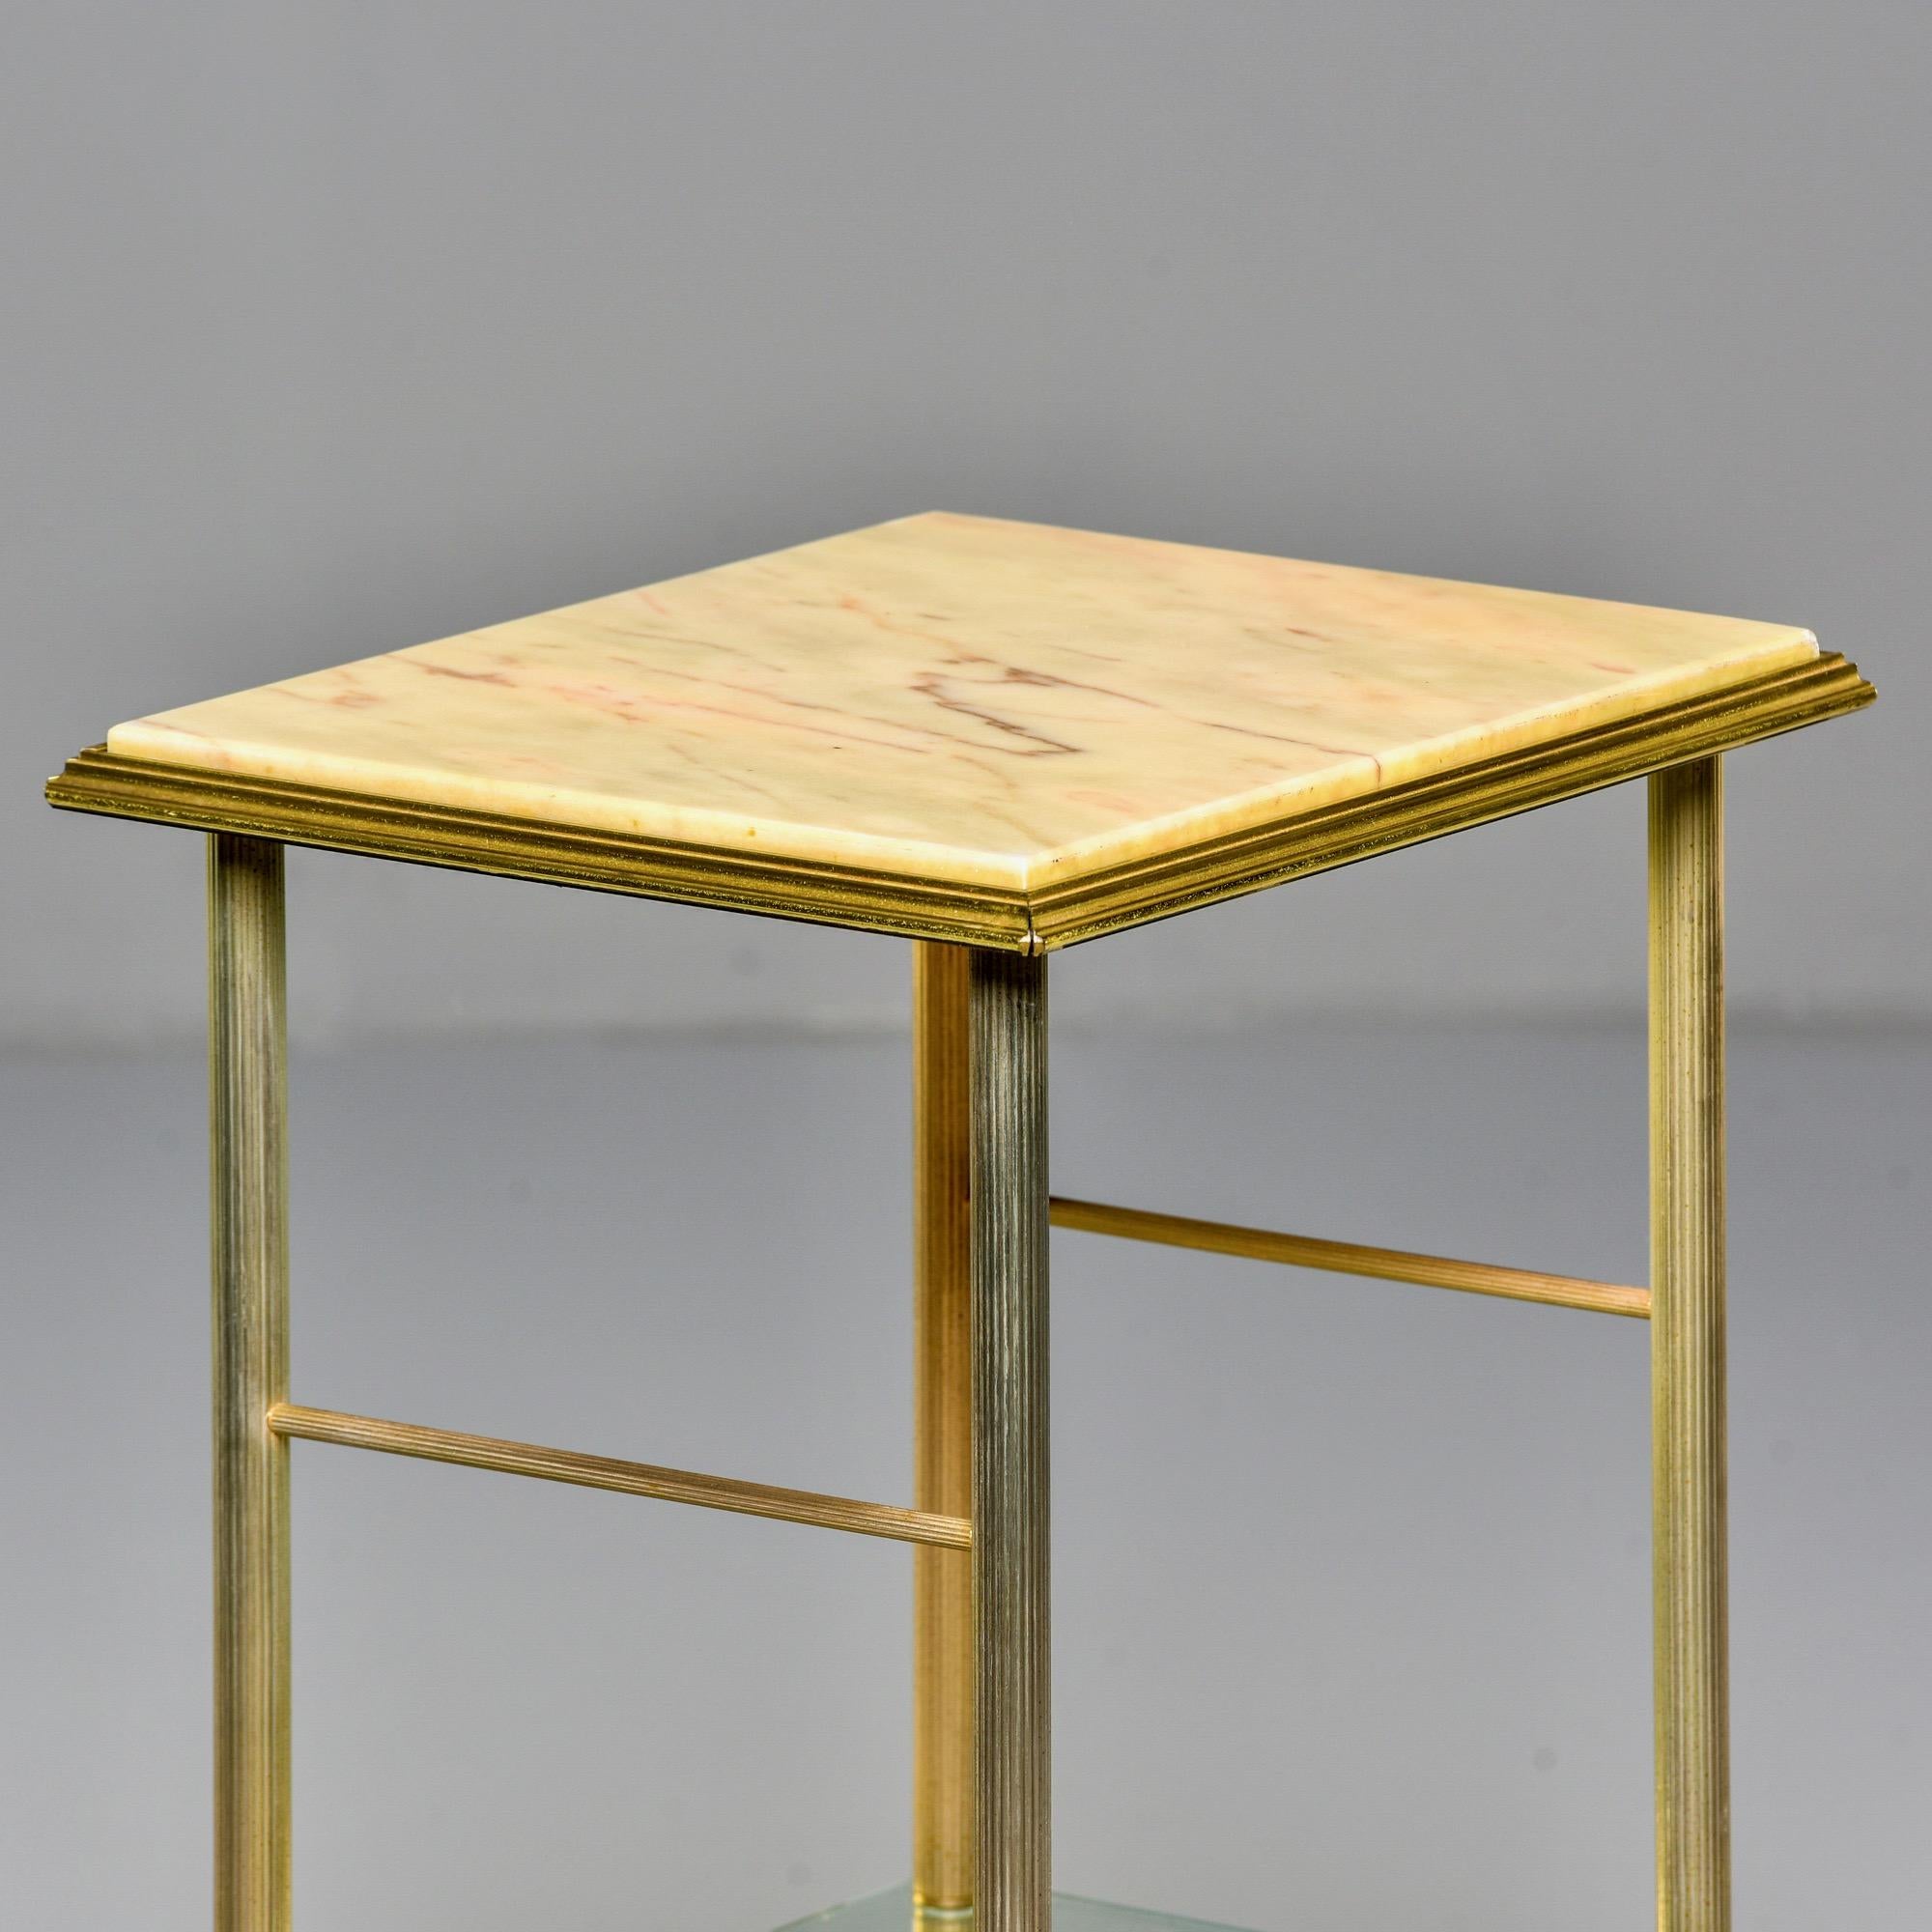 Table d'appoint en onyx et laiton avec plateau inférieur en verre et pieds cannelés, vers les années 1940. Acquis auprès d'un marchand français très expérimenté et réputé qui attribue avec certitude cette pièce à la Maison Jansen.
         